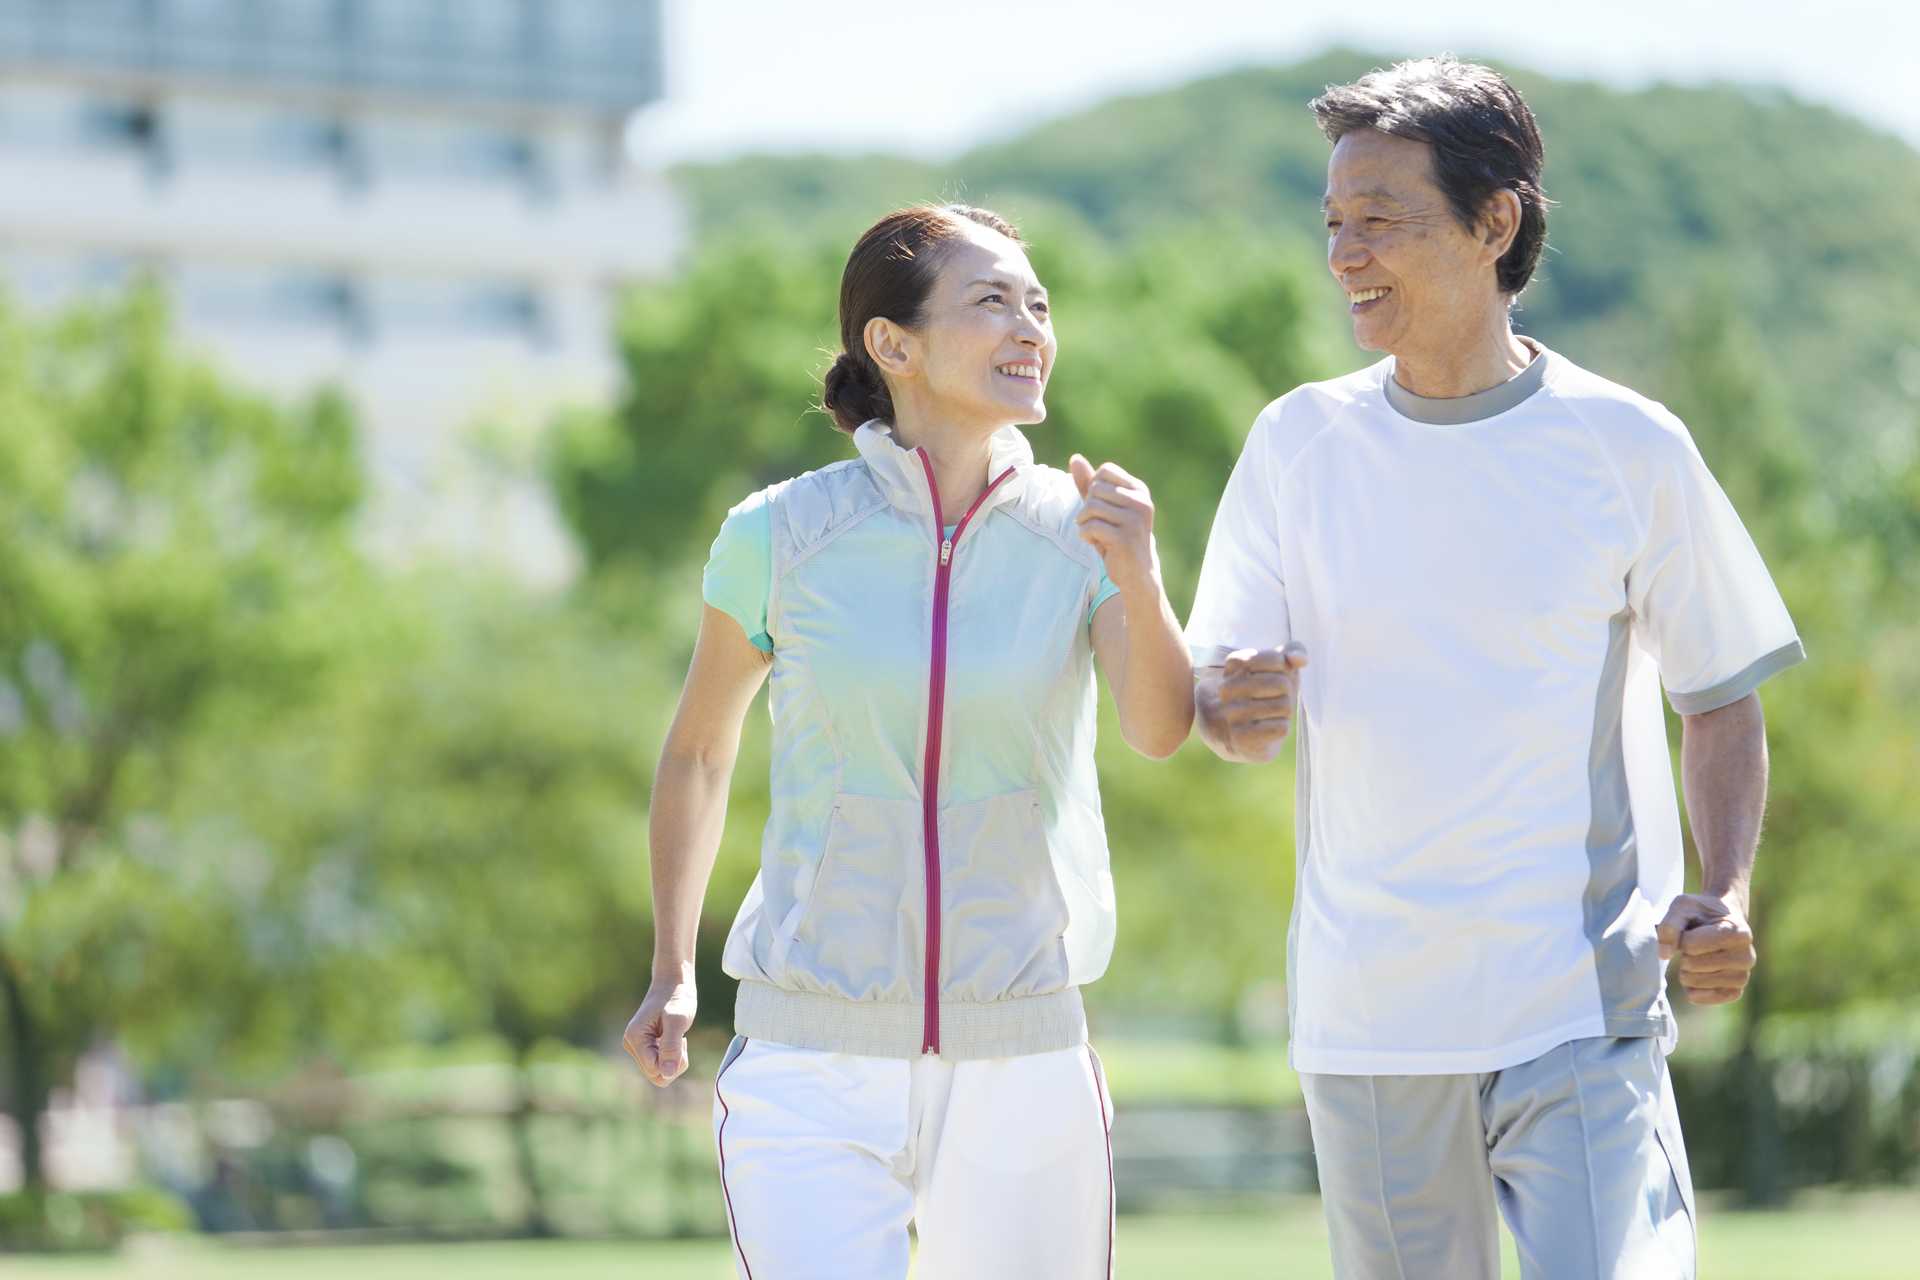 年を取るにつれて、運動量は増やさなければいけない。 | 健康のためになる30の散歩術